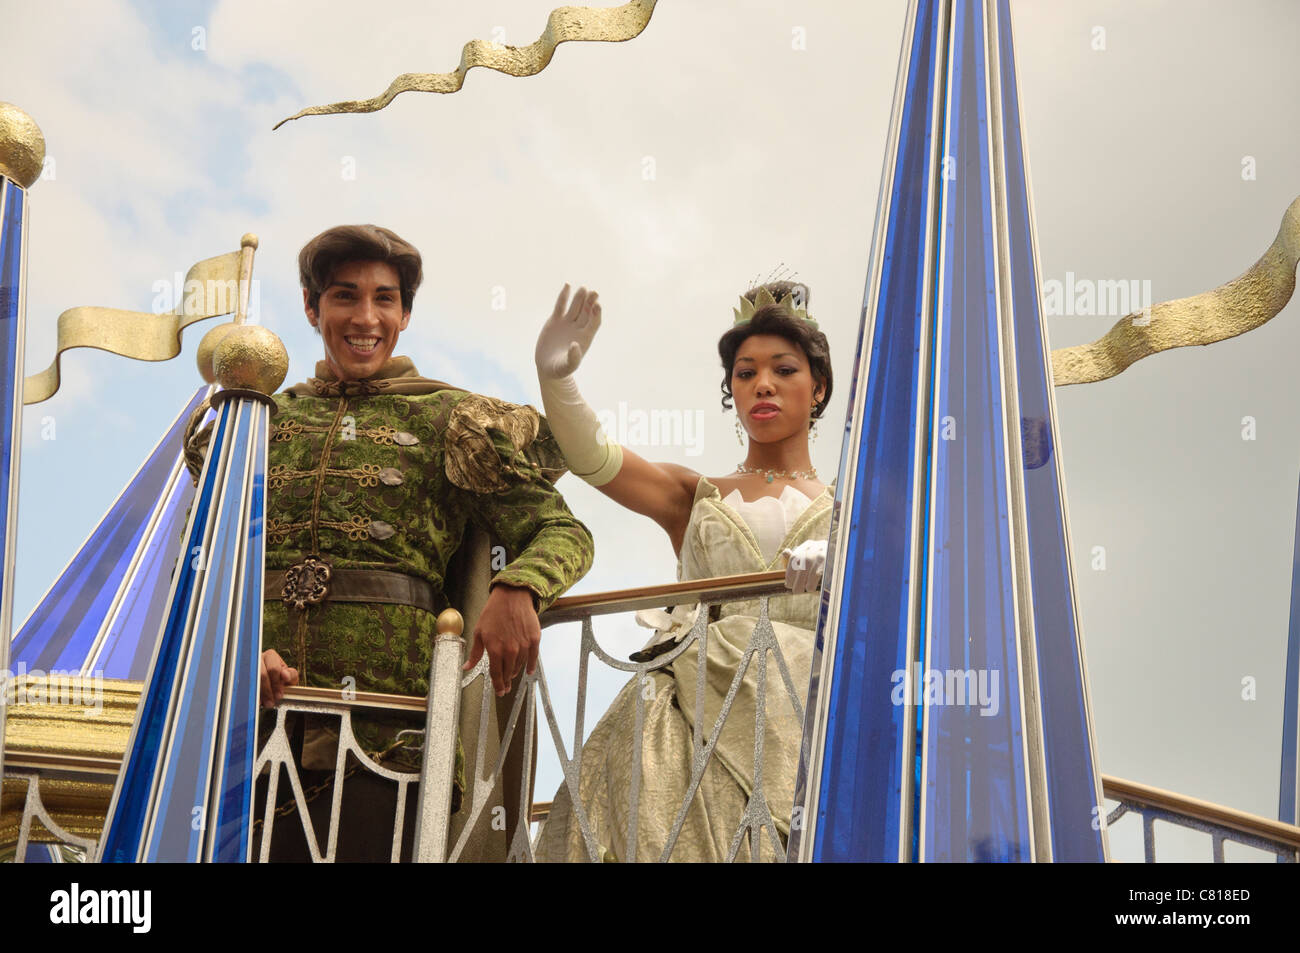 Walt Disney World Florida Zauberreich feiern einen Traum wahr Parade Tiana  und Prinz Naveen Küss den Frosch gekommen Stockfotografie - Alamy